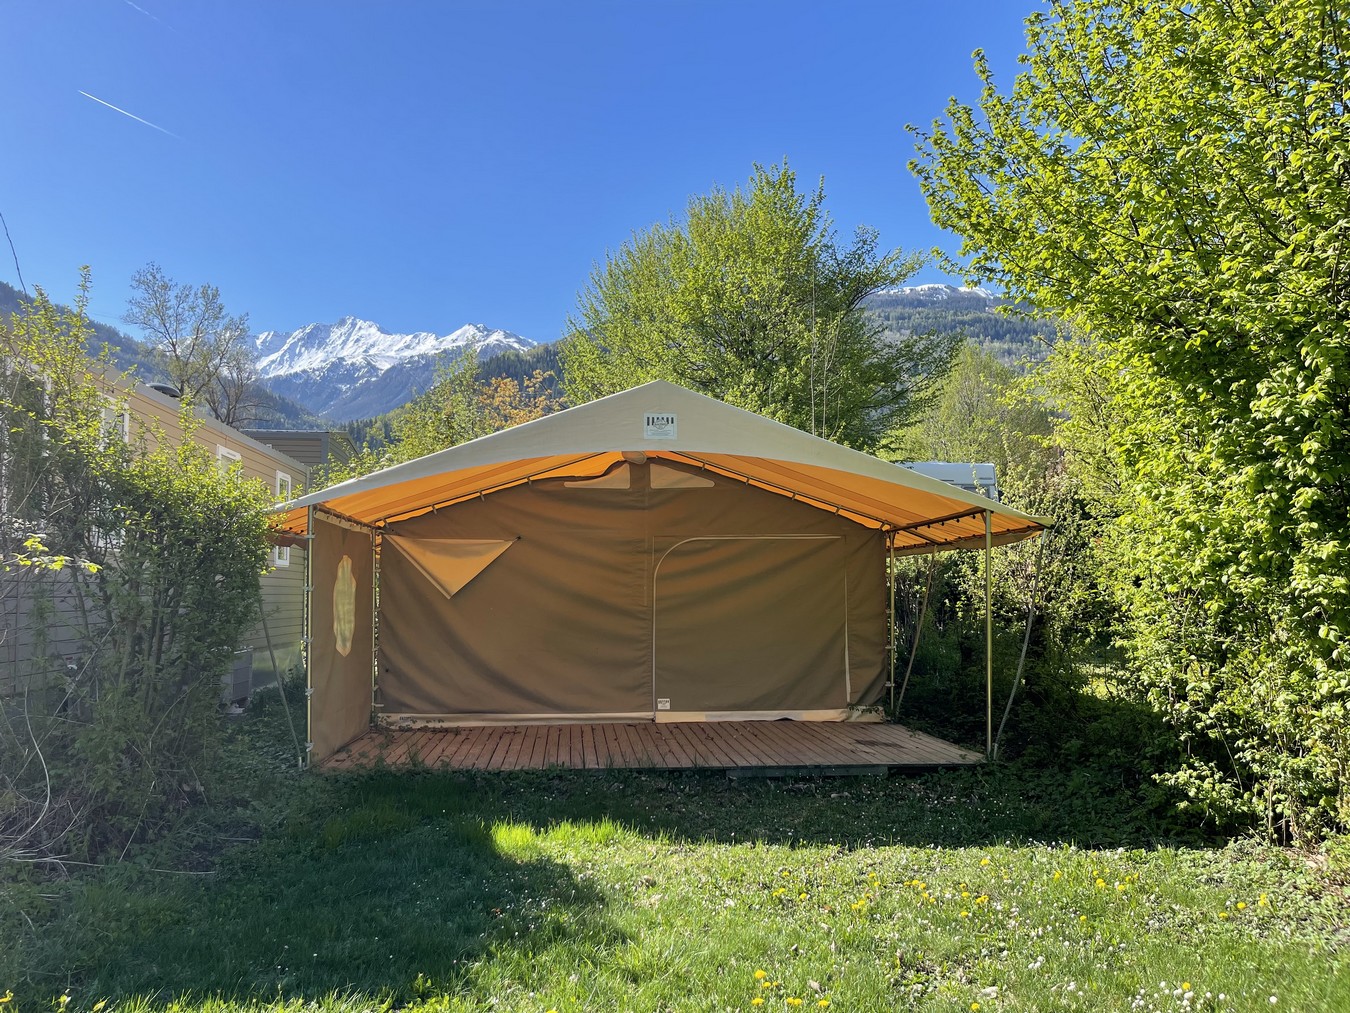 Alloggio - Bungalow Tent Canada - Camping Qualité l'Eden de la Vanoise